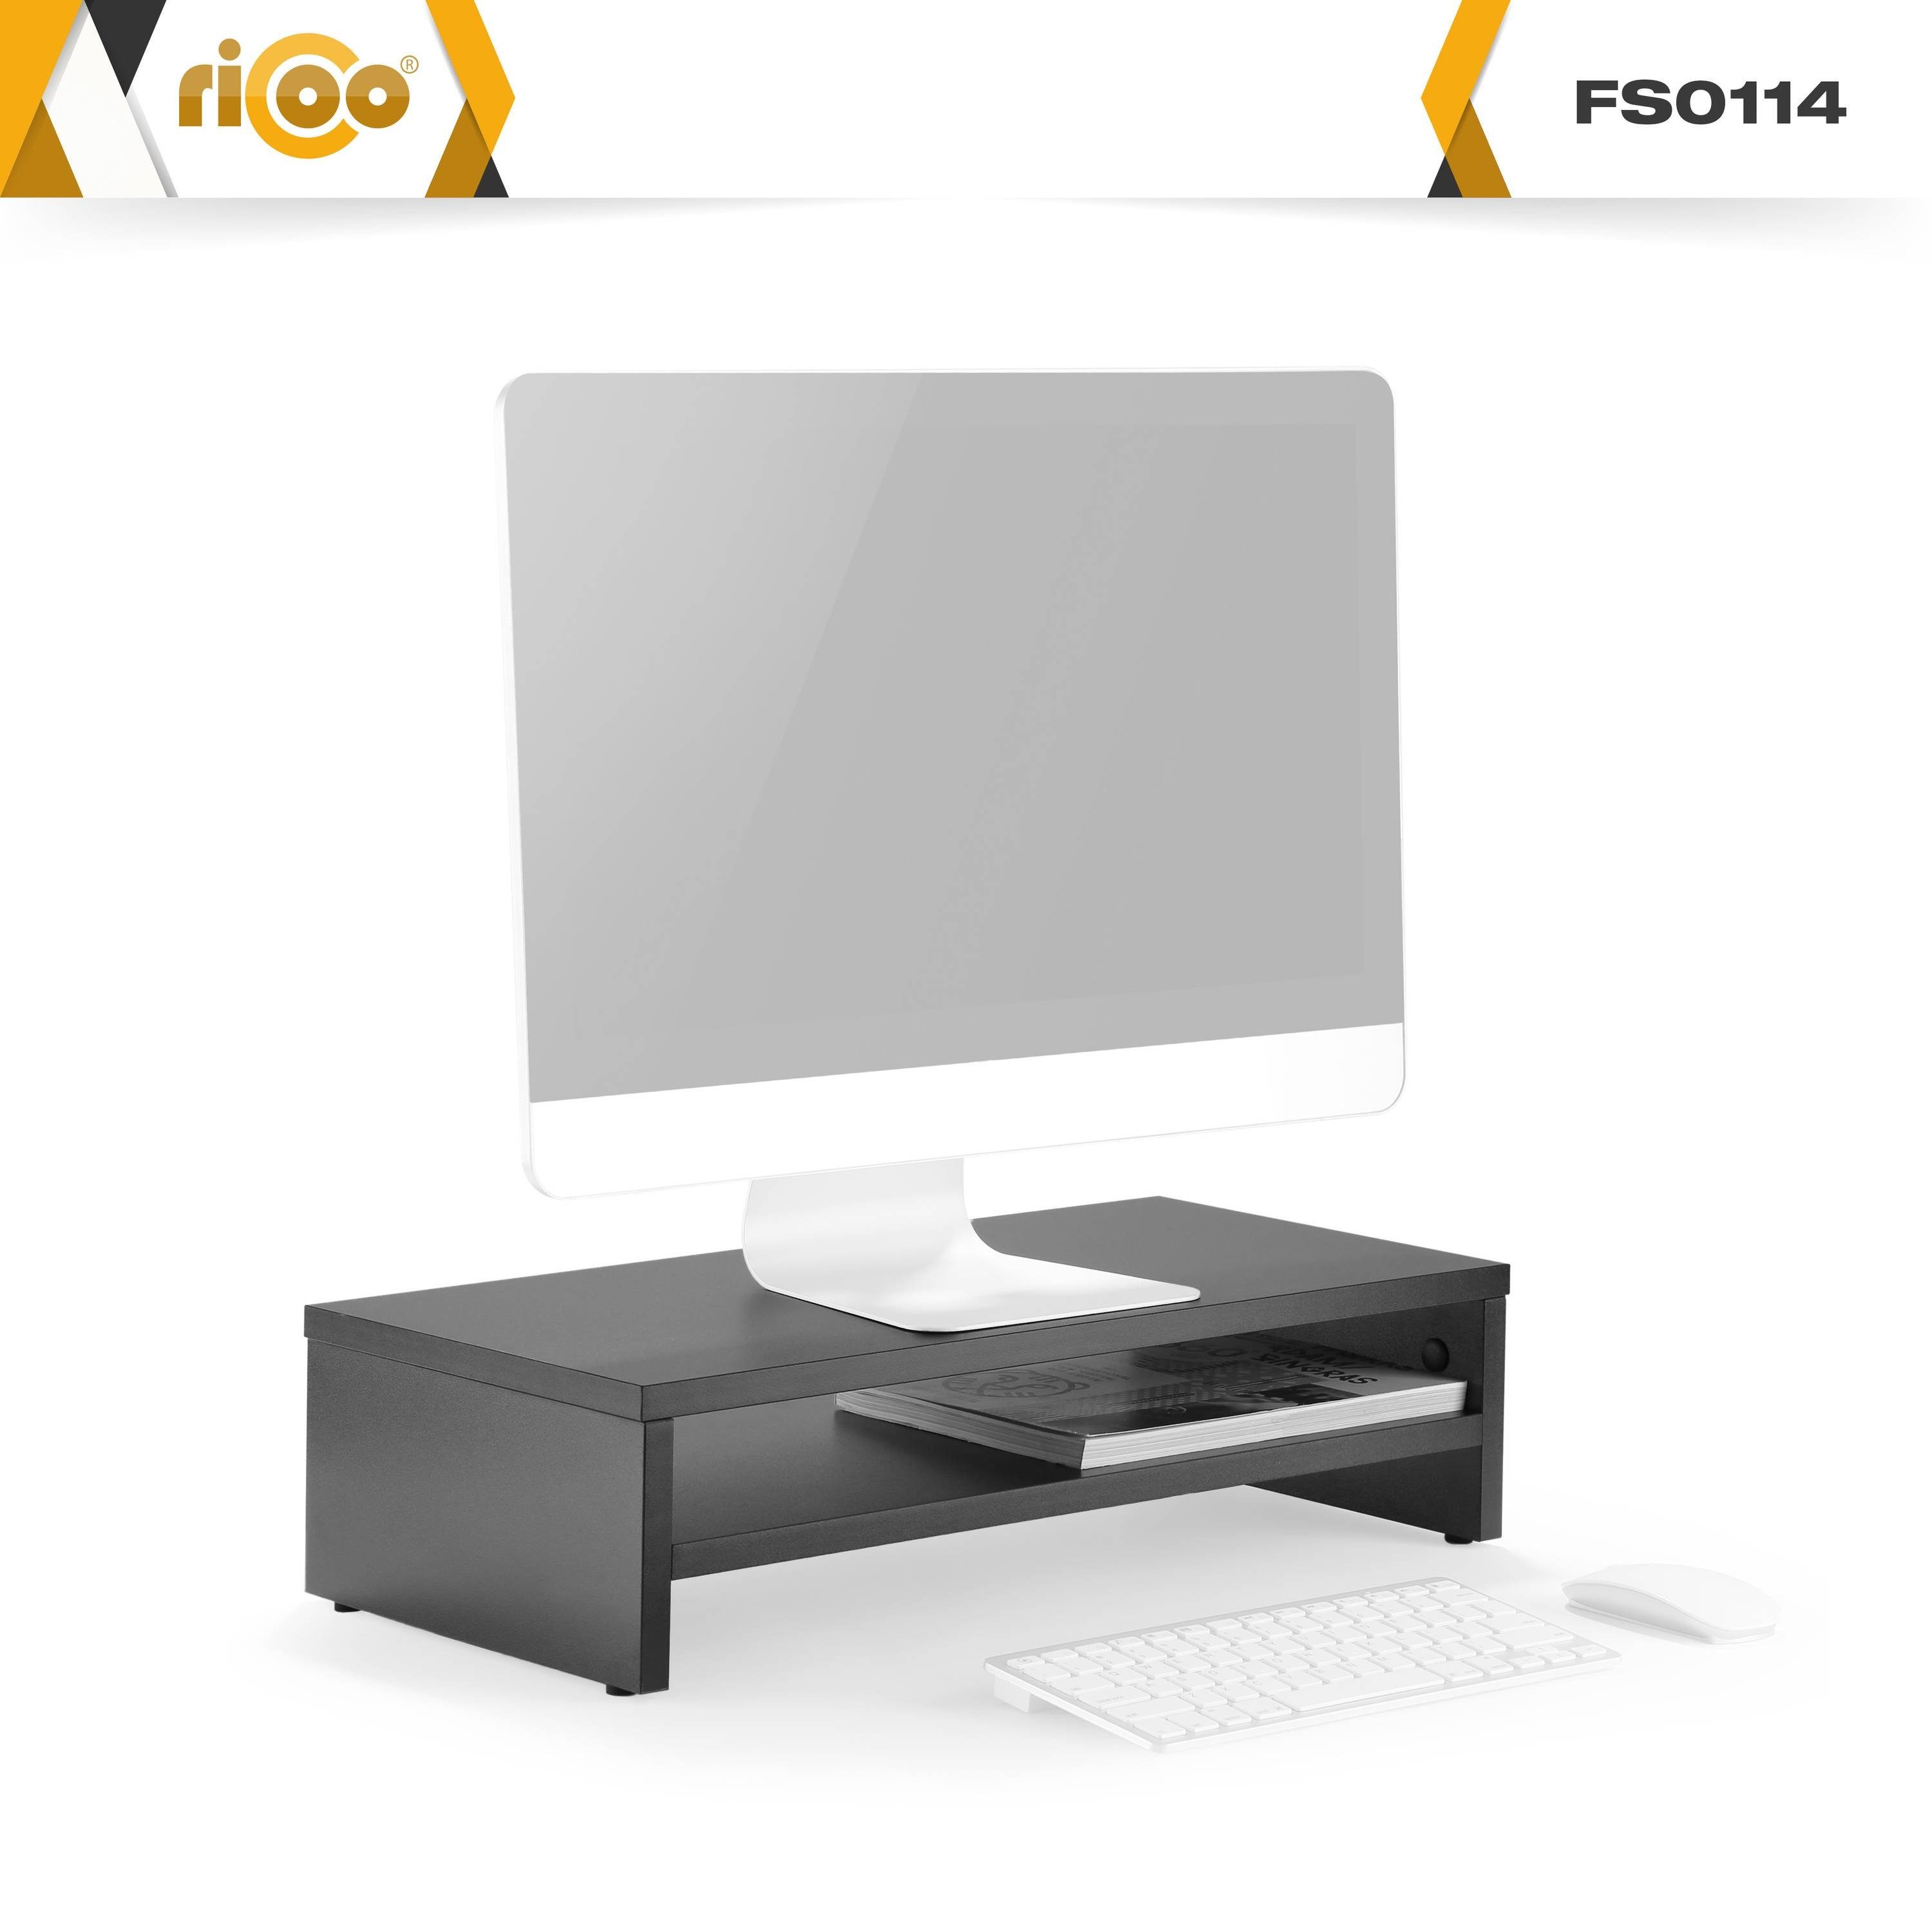 Tisch Monitorerhöhung Schreibtisch Schwarz Aufsatz RICOO Schreibtischaufsatz Bildschirm Monitorständer FS0114-S,